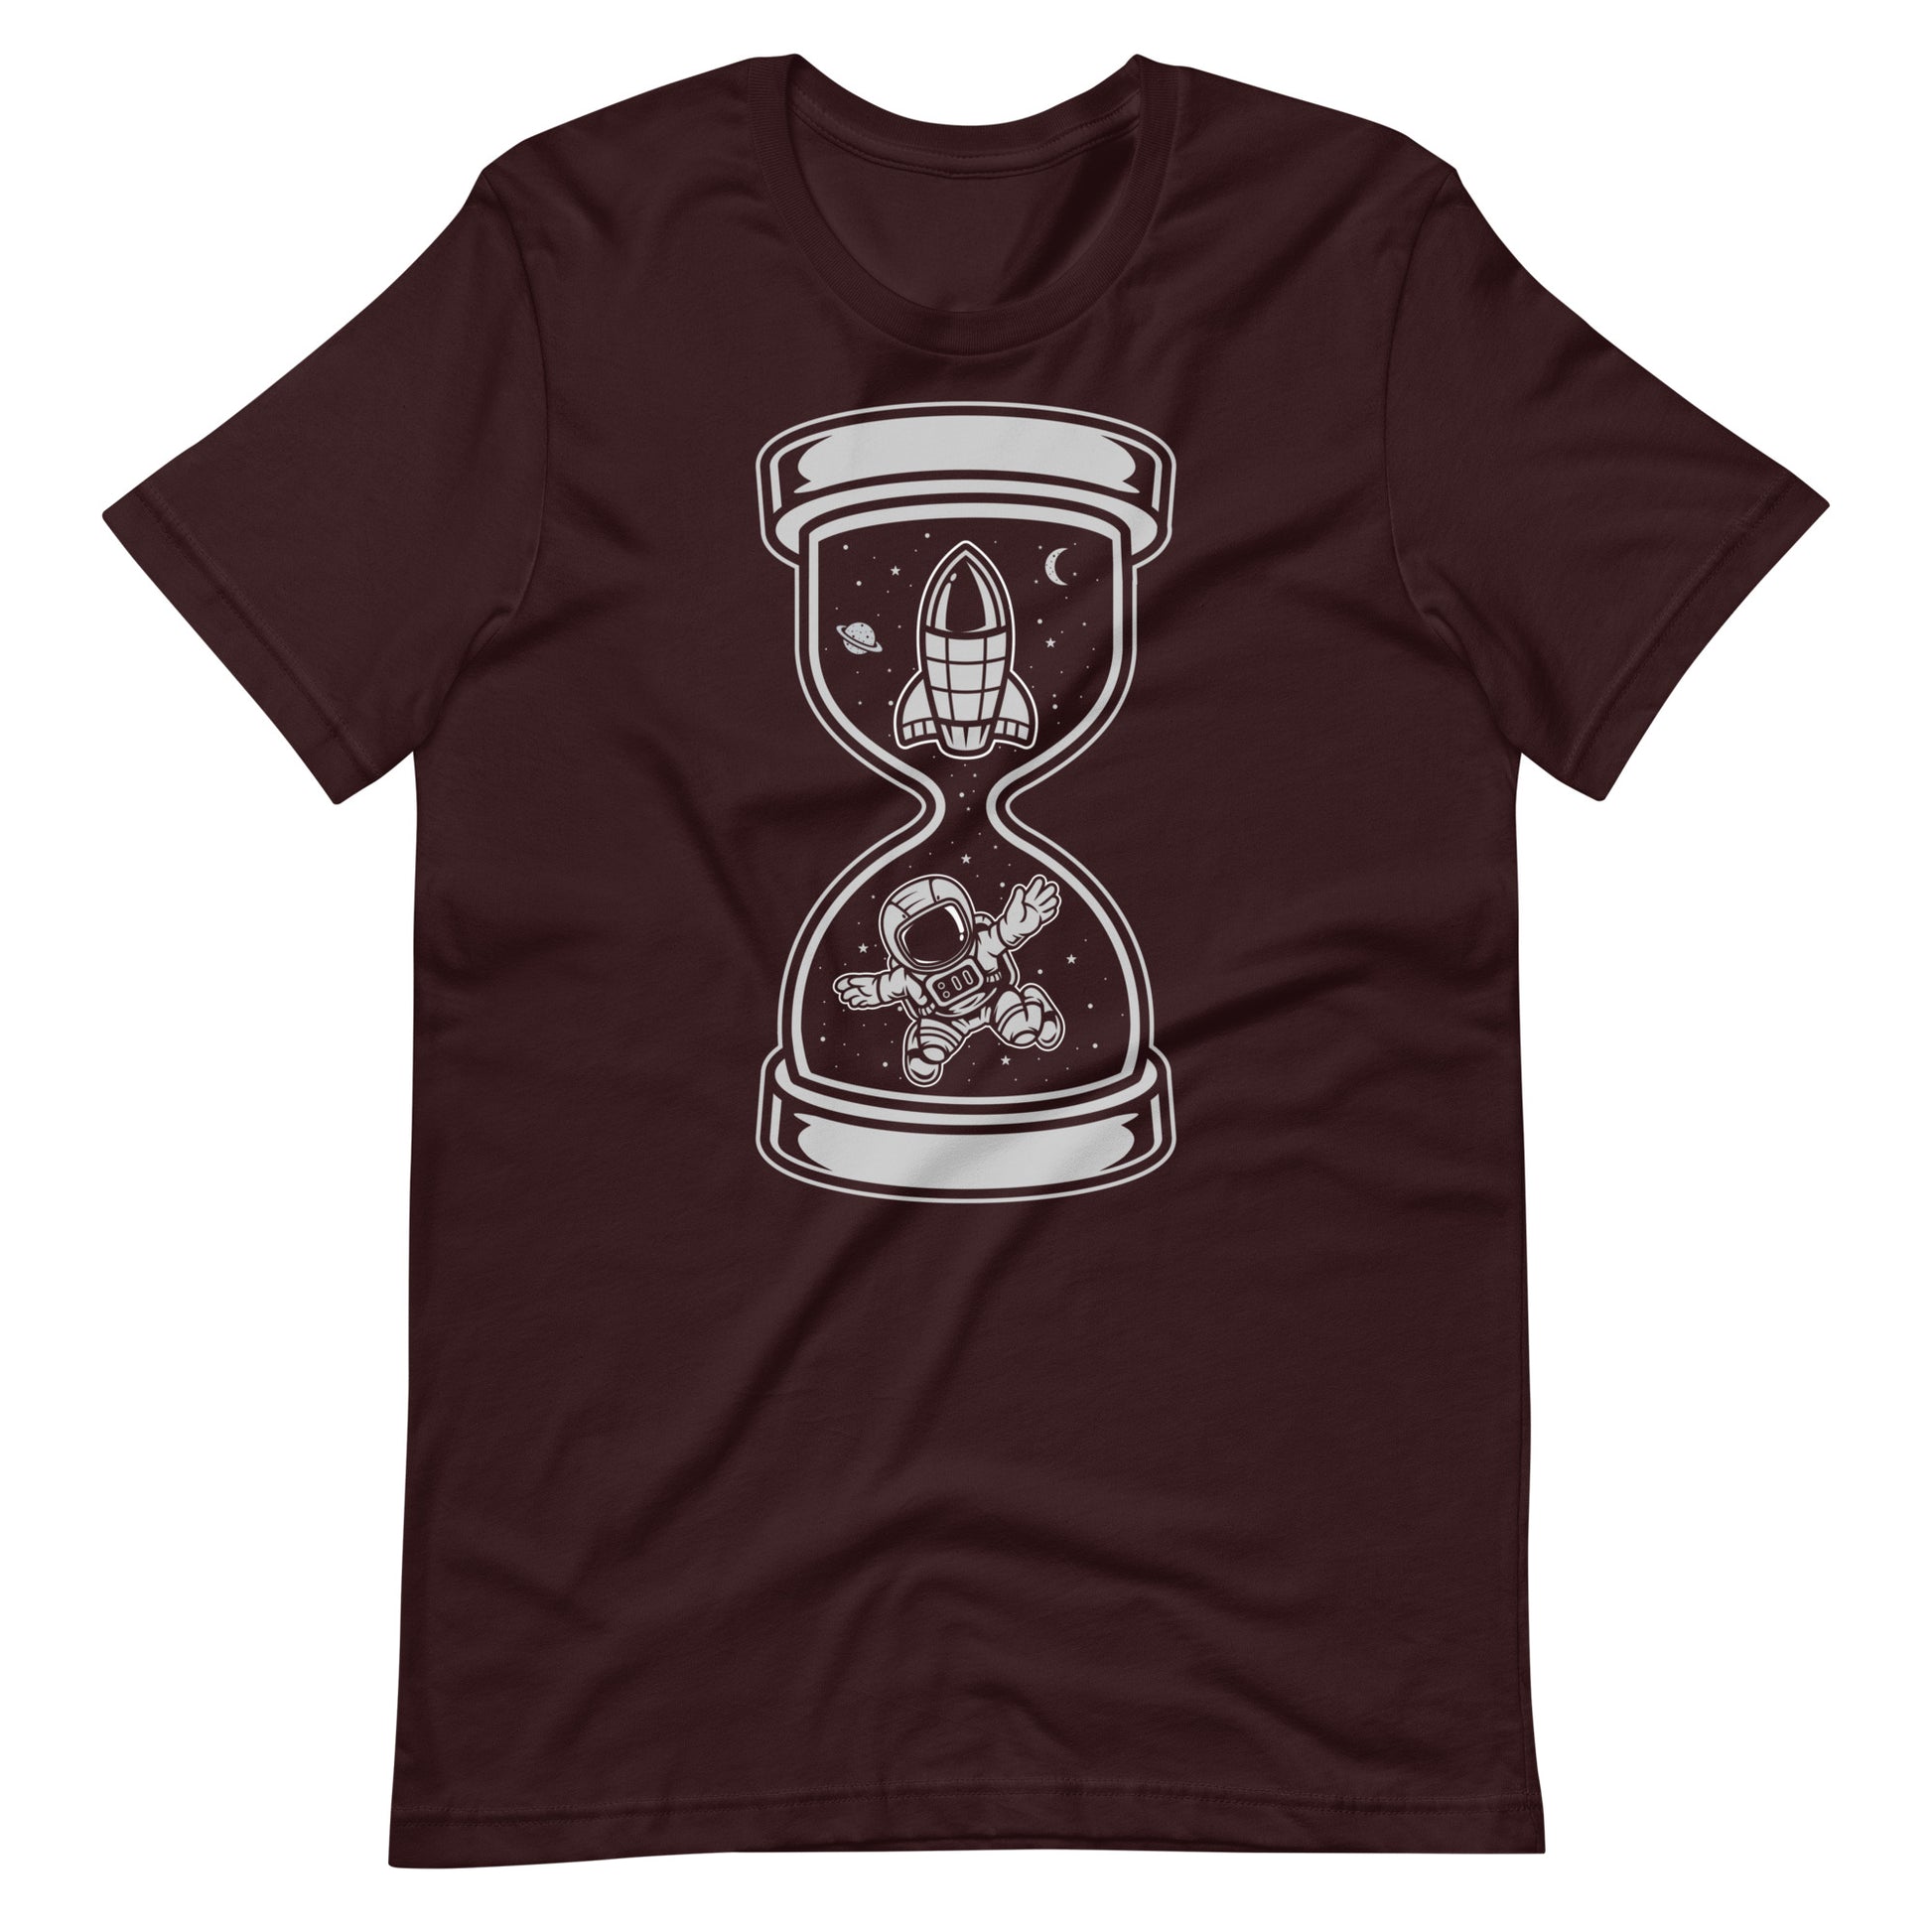 Astronaut Time - Men's t-shirt - Oxblood Black Front